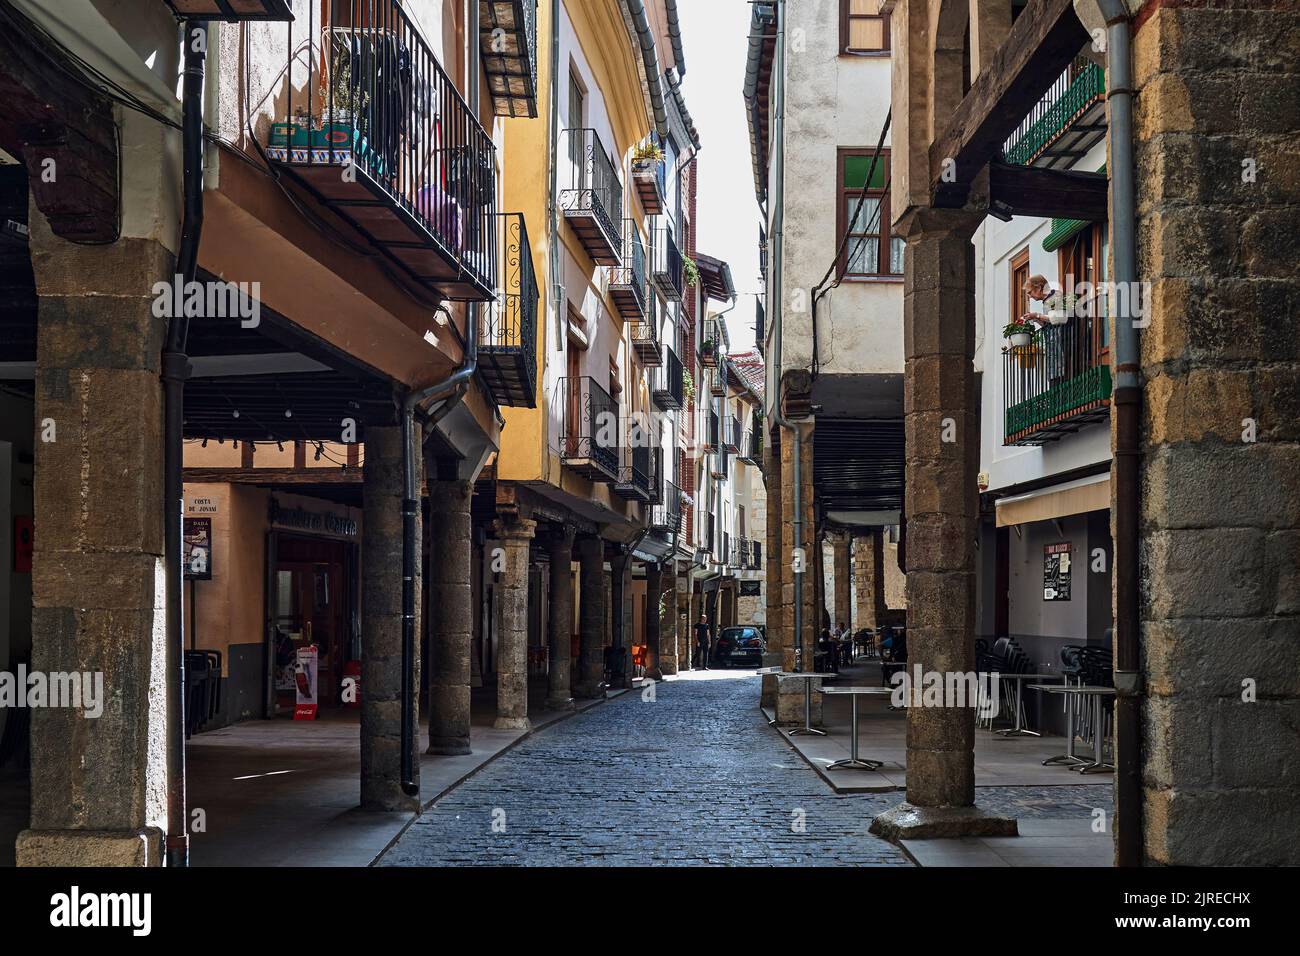 La ciudad medieval de Morella, Castellon en España Foto de stock